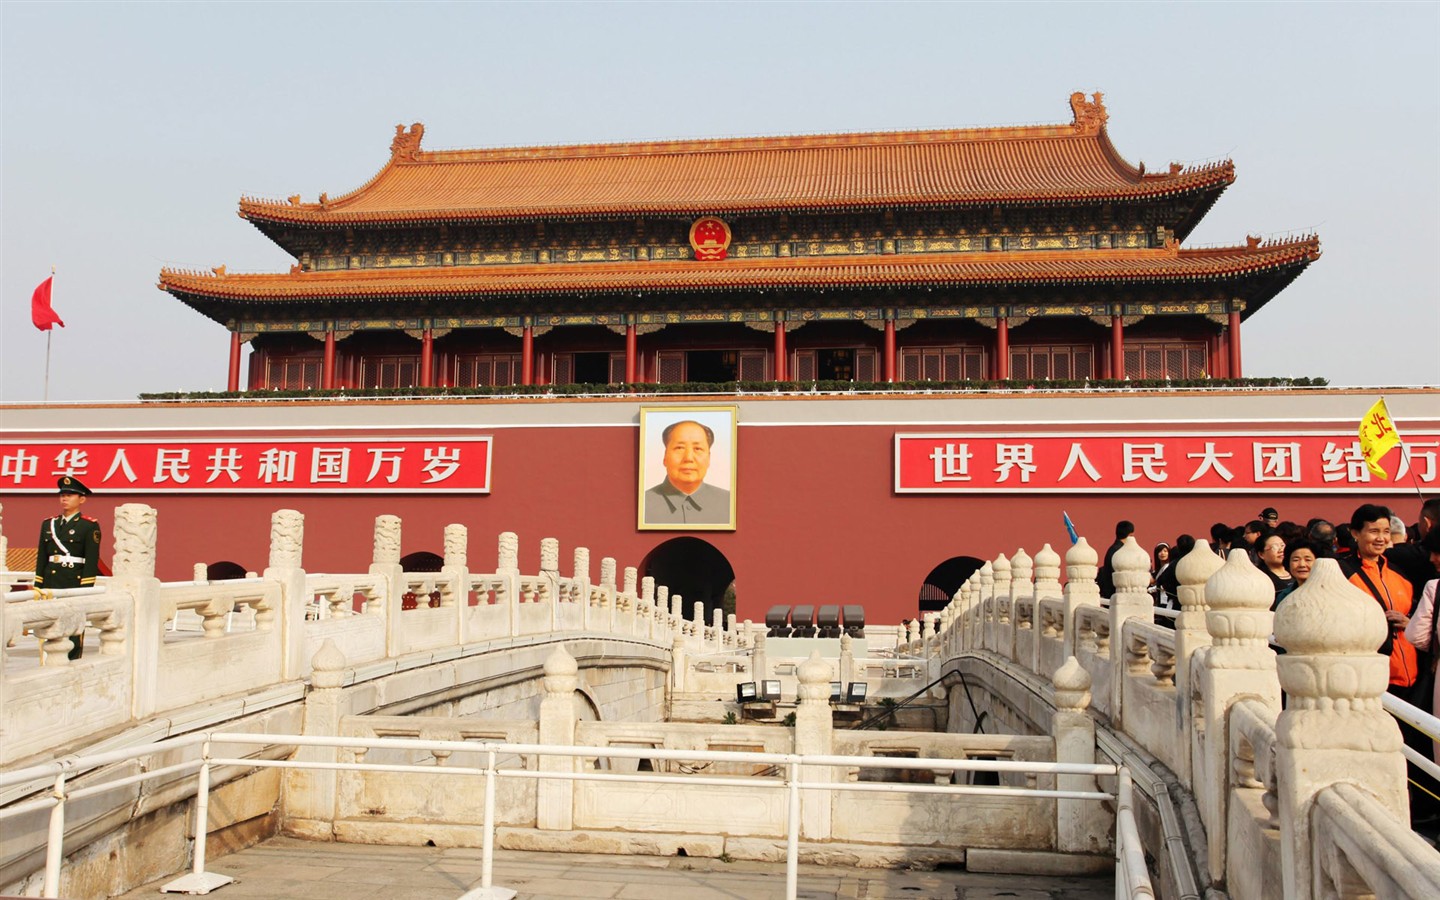 Tour Beijing - Platz des Himmlischen Friedens (GGC Werke) #1 - 1440x900